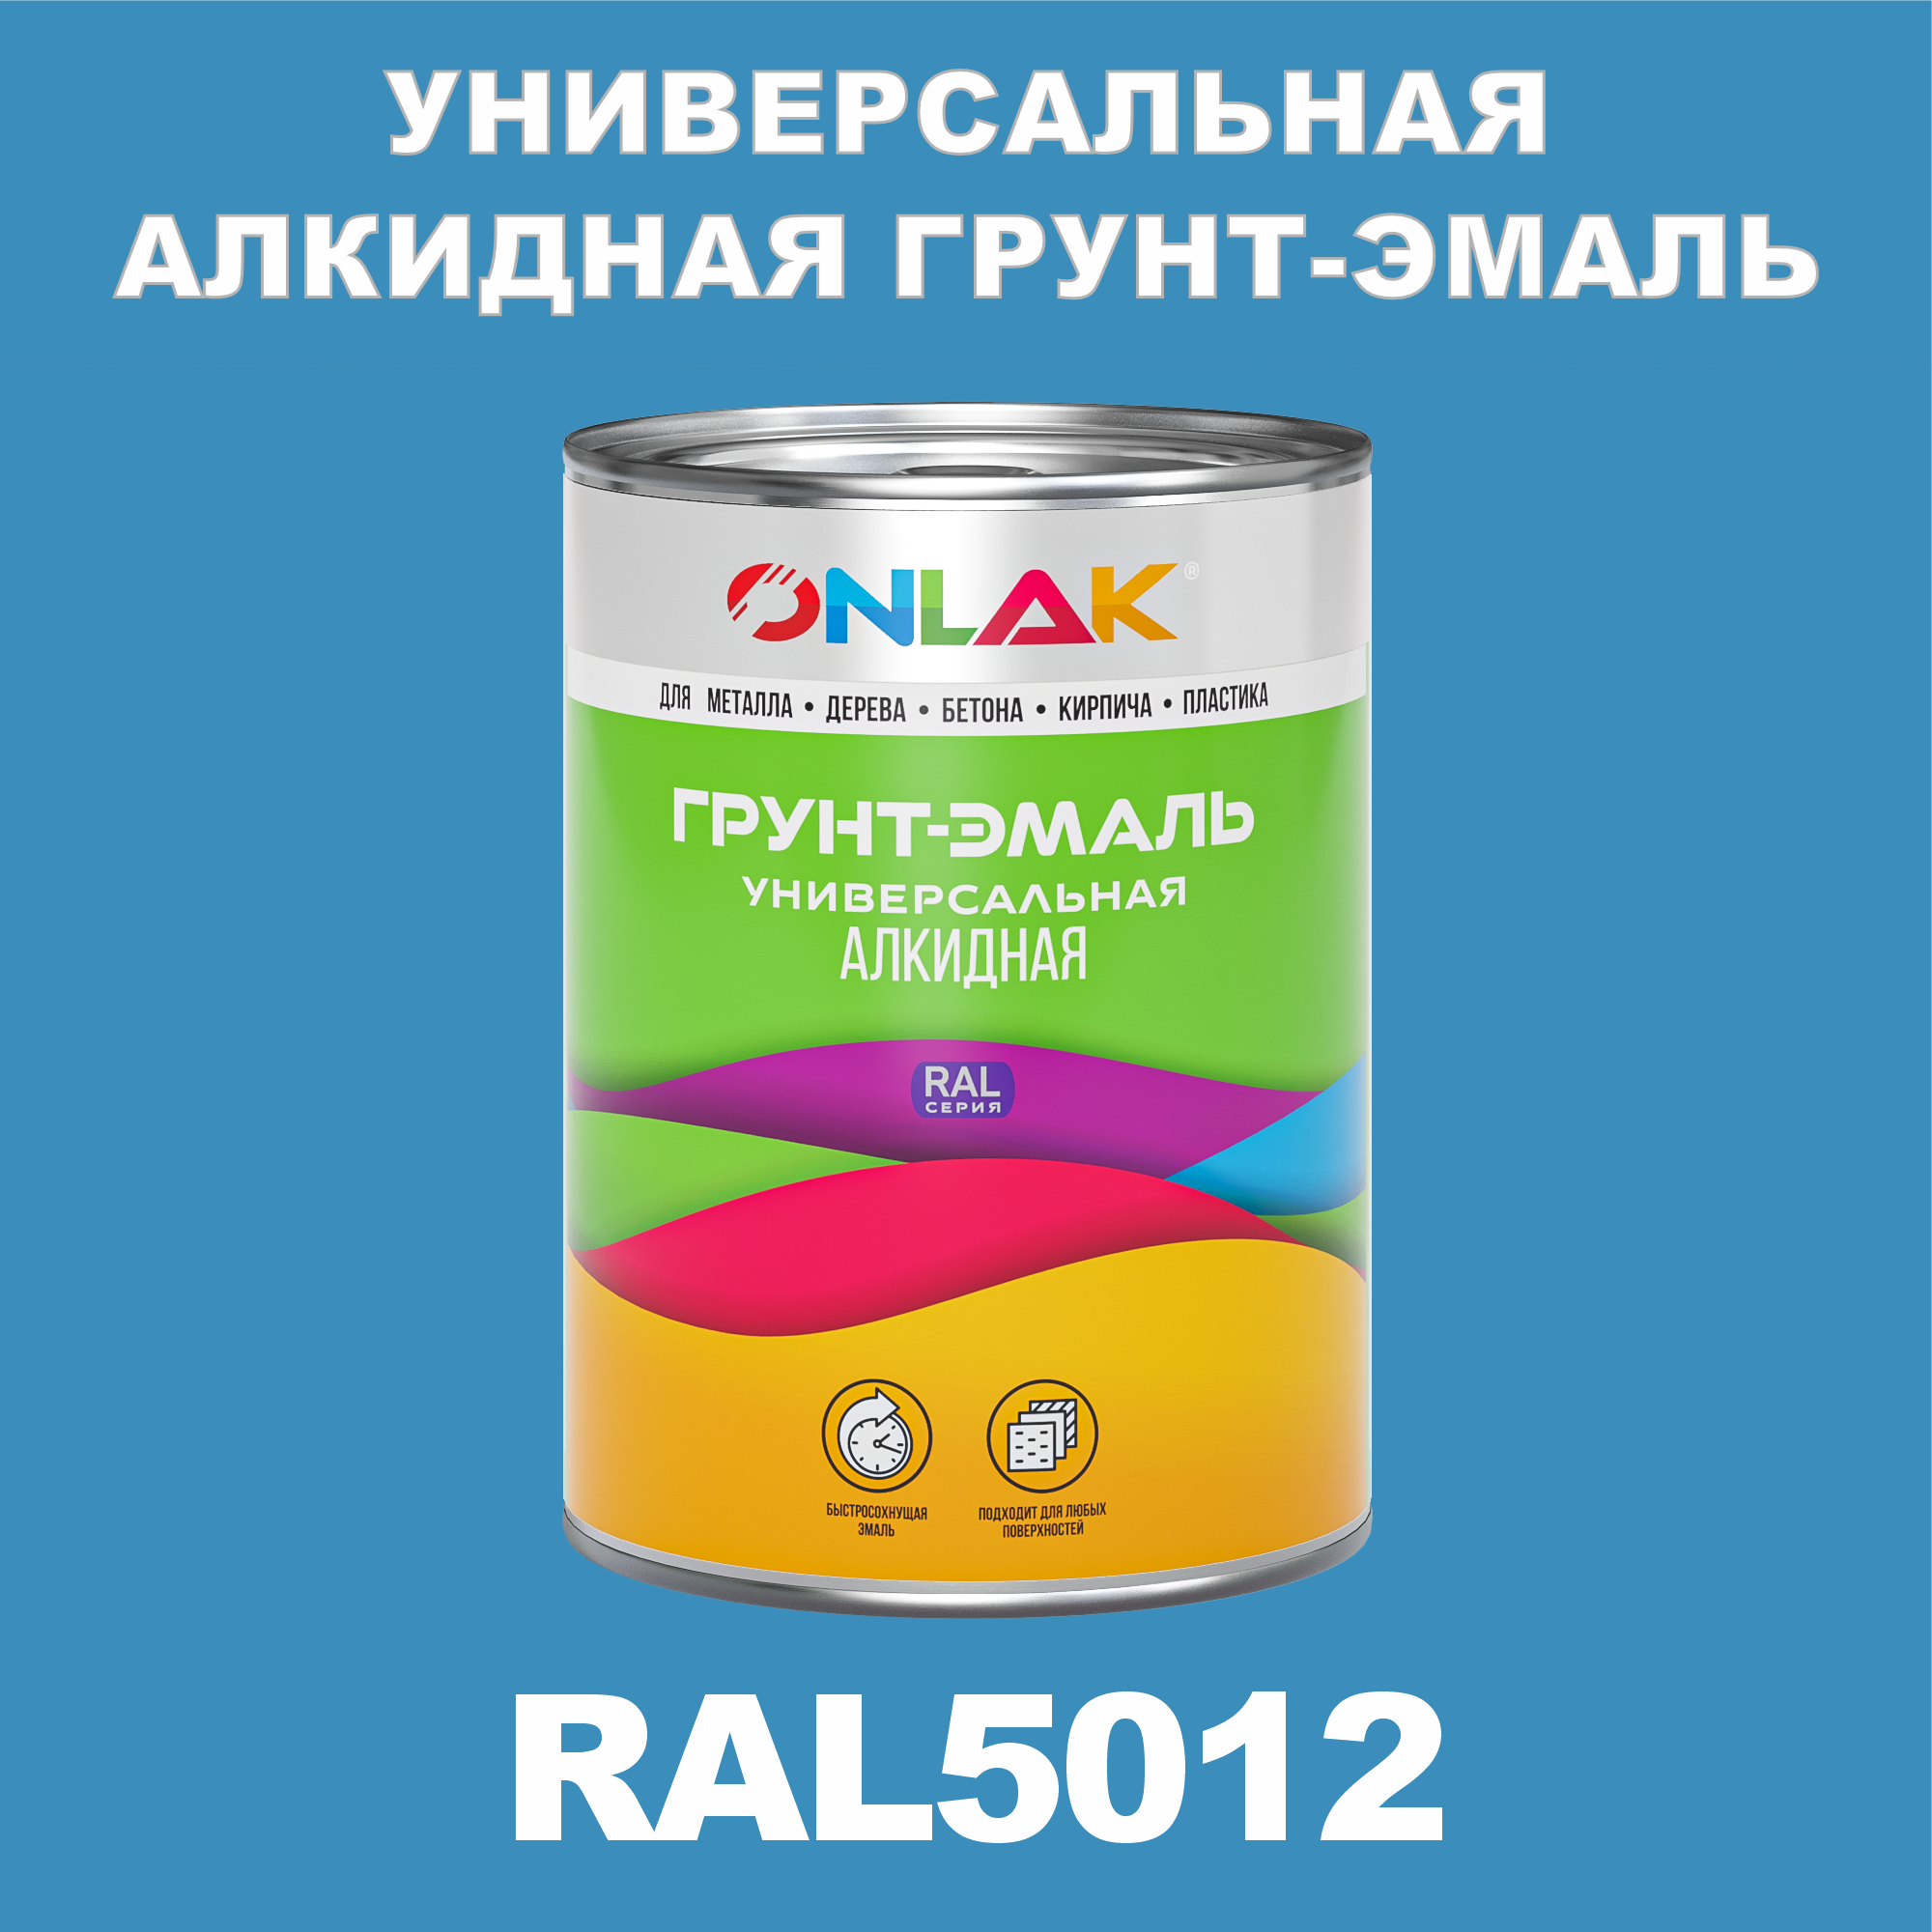 Грунт-эмаль ONLAK 1К RAL5012 антикоррозионная алкидная по металлу по ржавчине 1 кг грунт эмаль yollo по ржавчине алкидная белая 0 9 кг